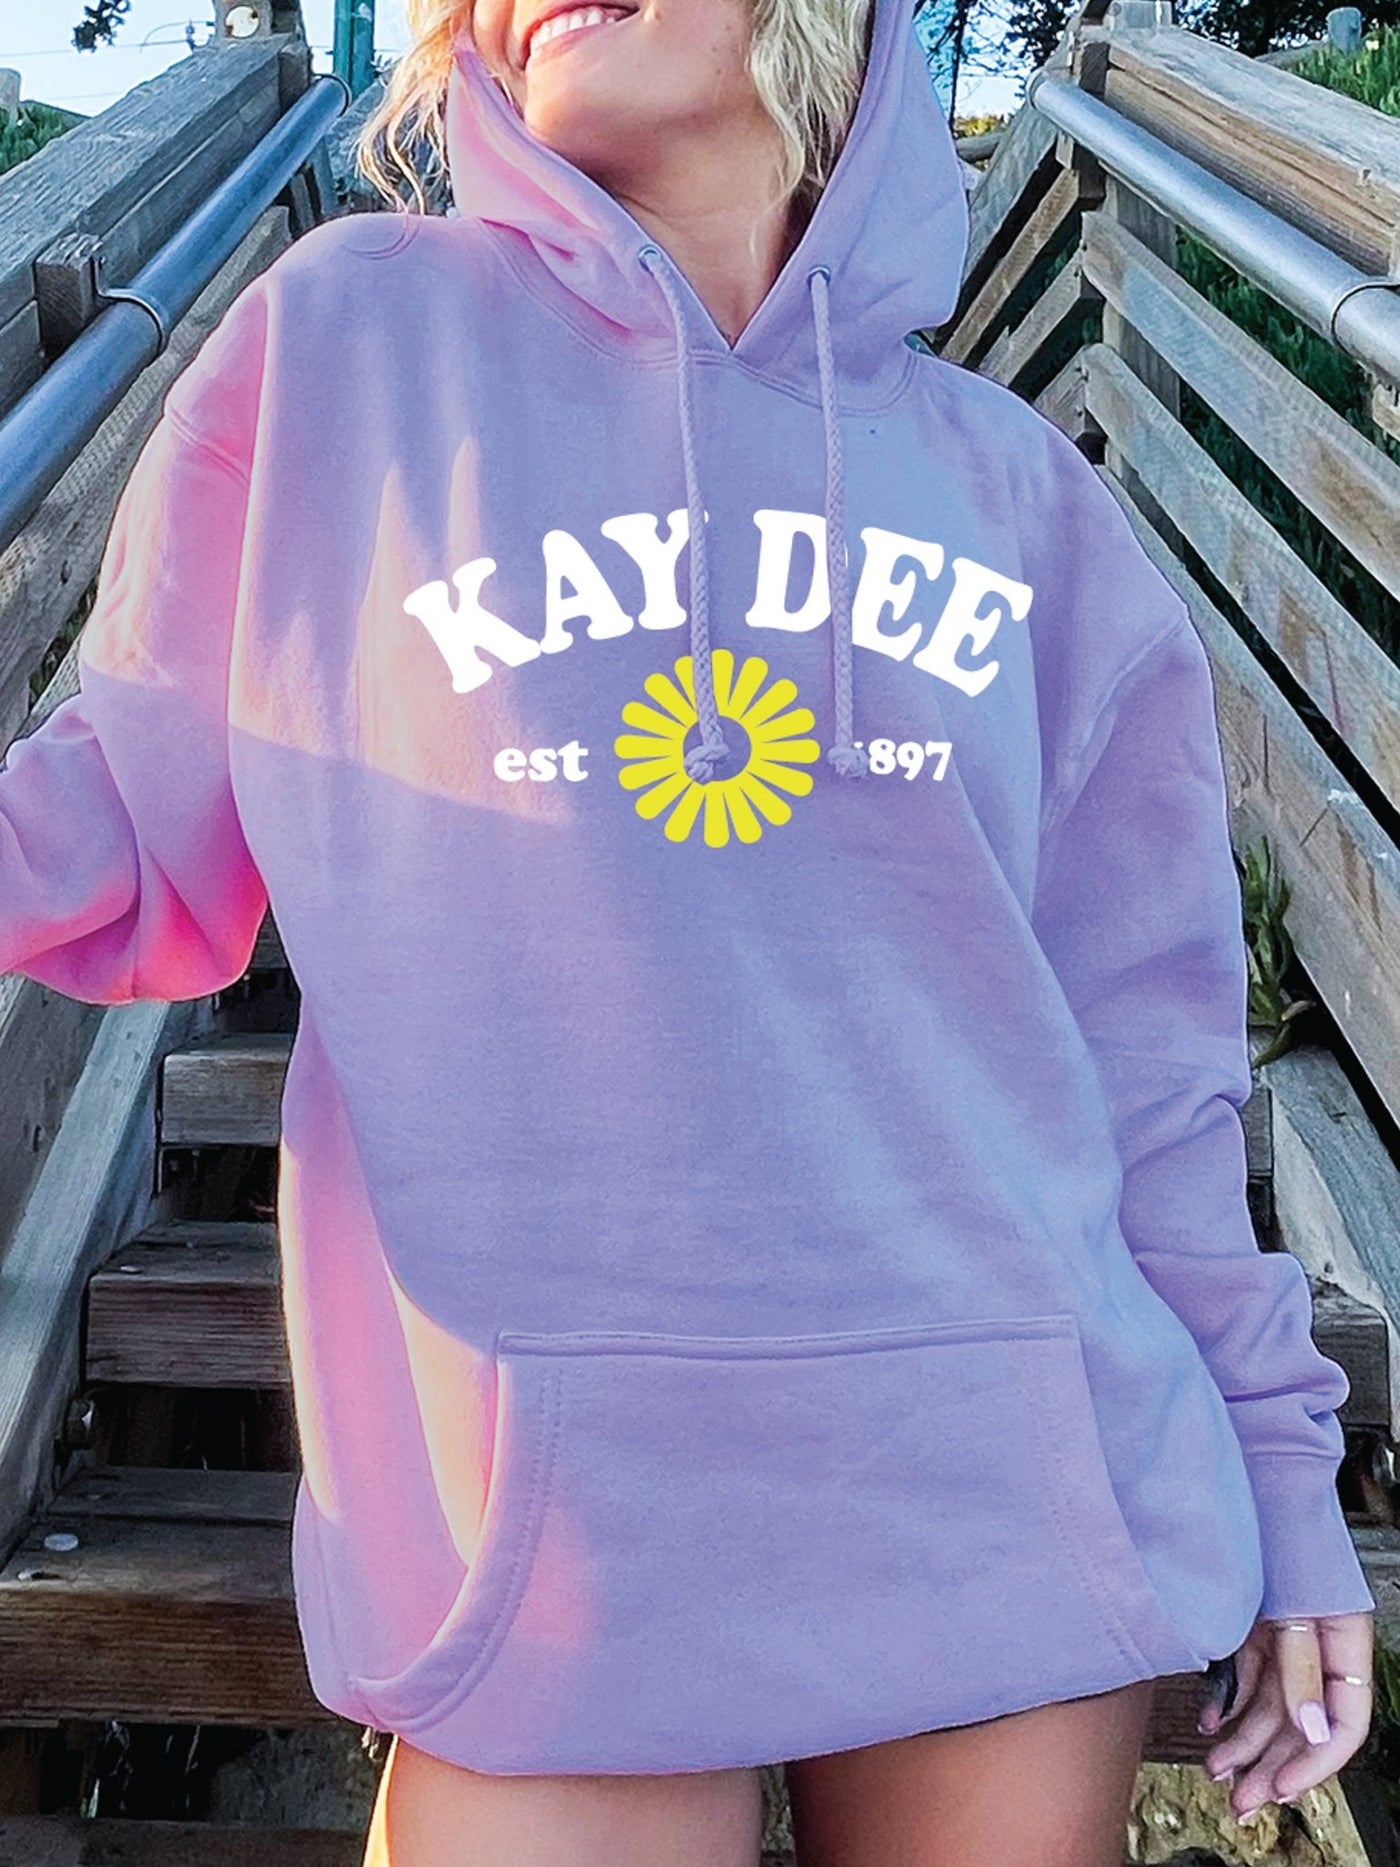 Kappa Delta Lavender Flower Sorority Hoodie | Trendy Sorority Kay Dee Sweatshirt